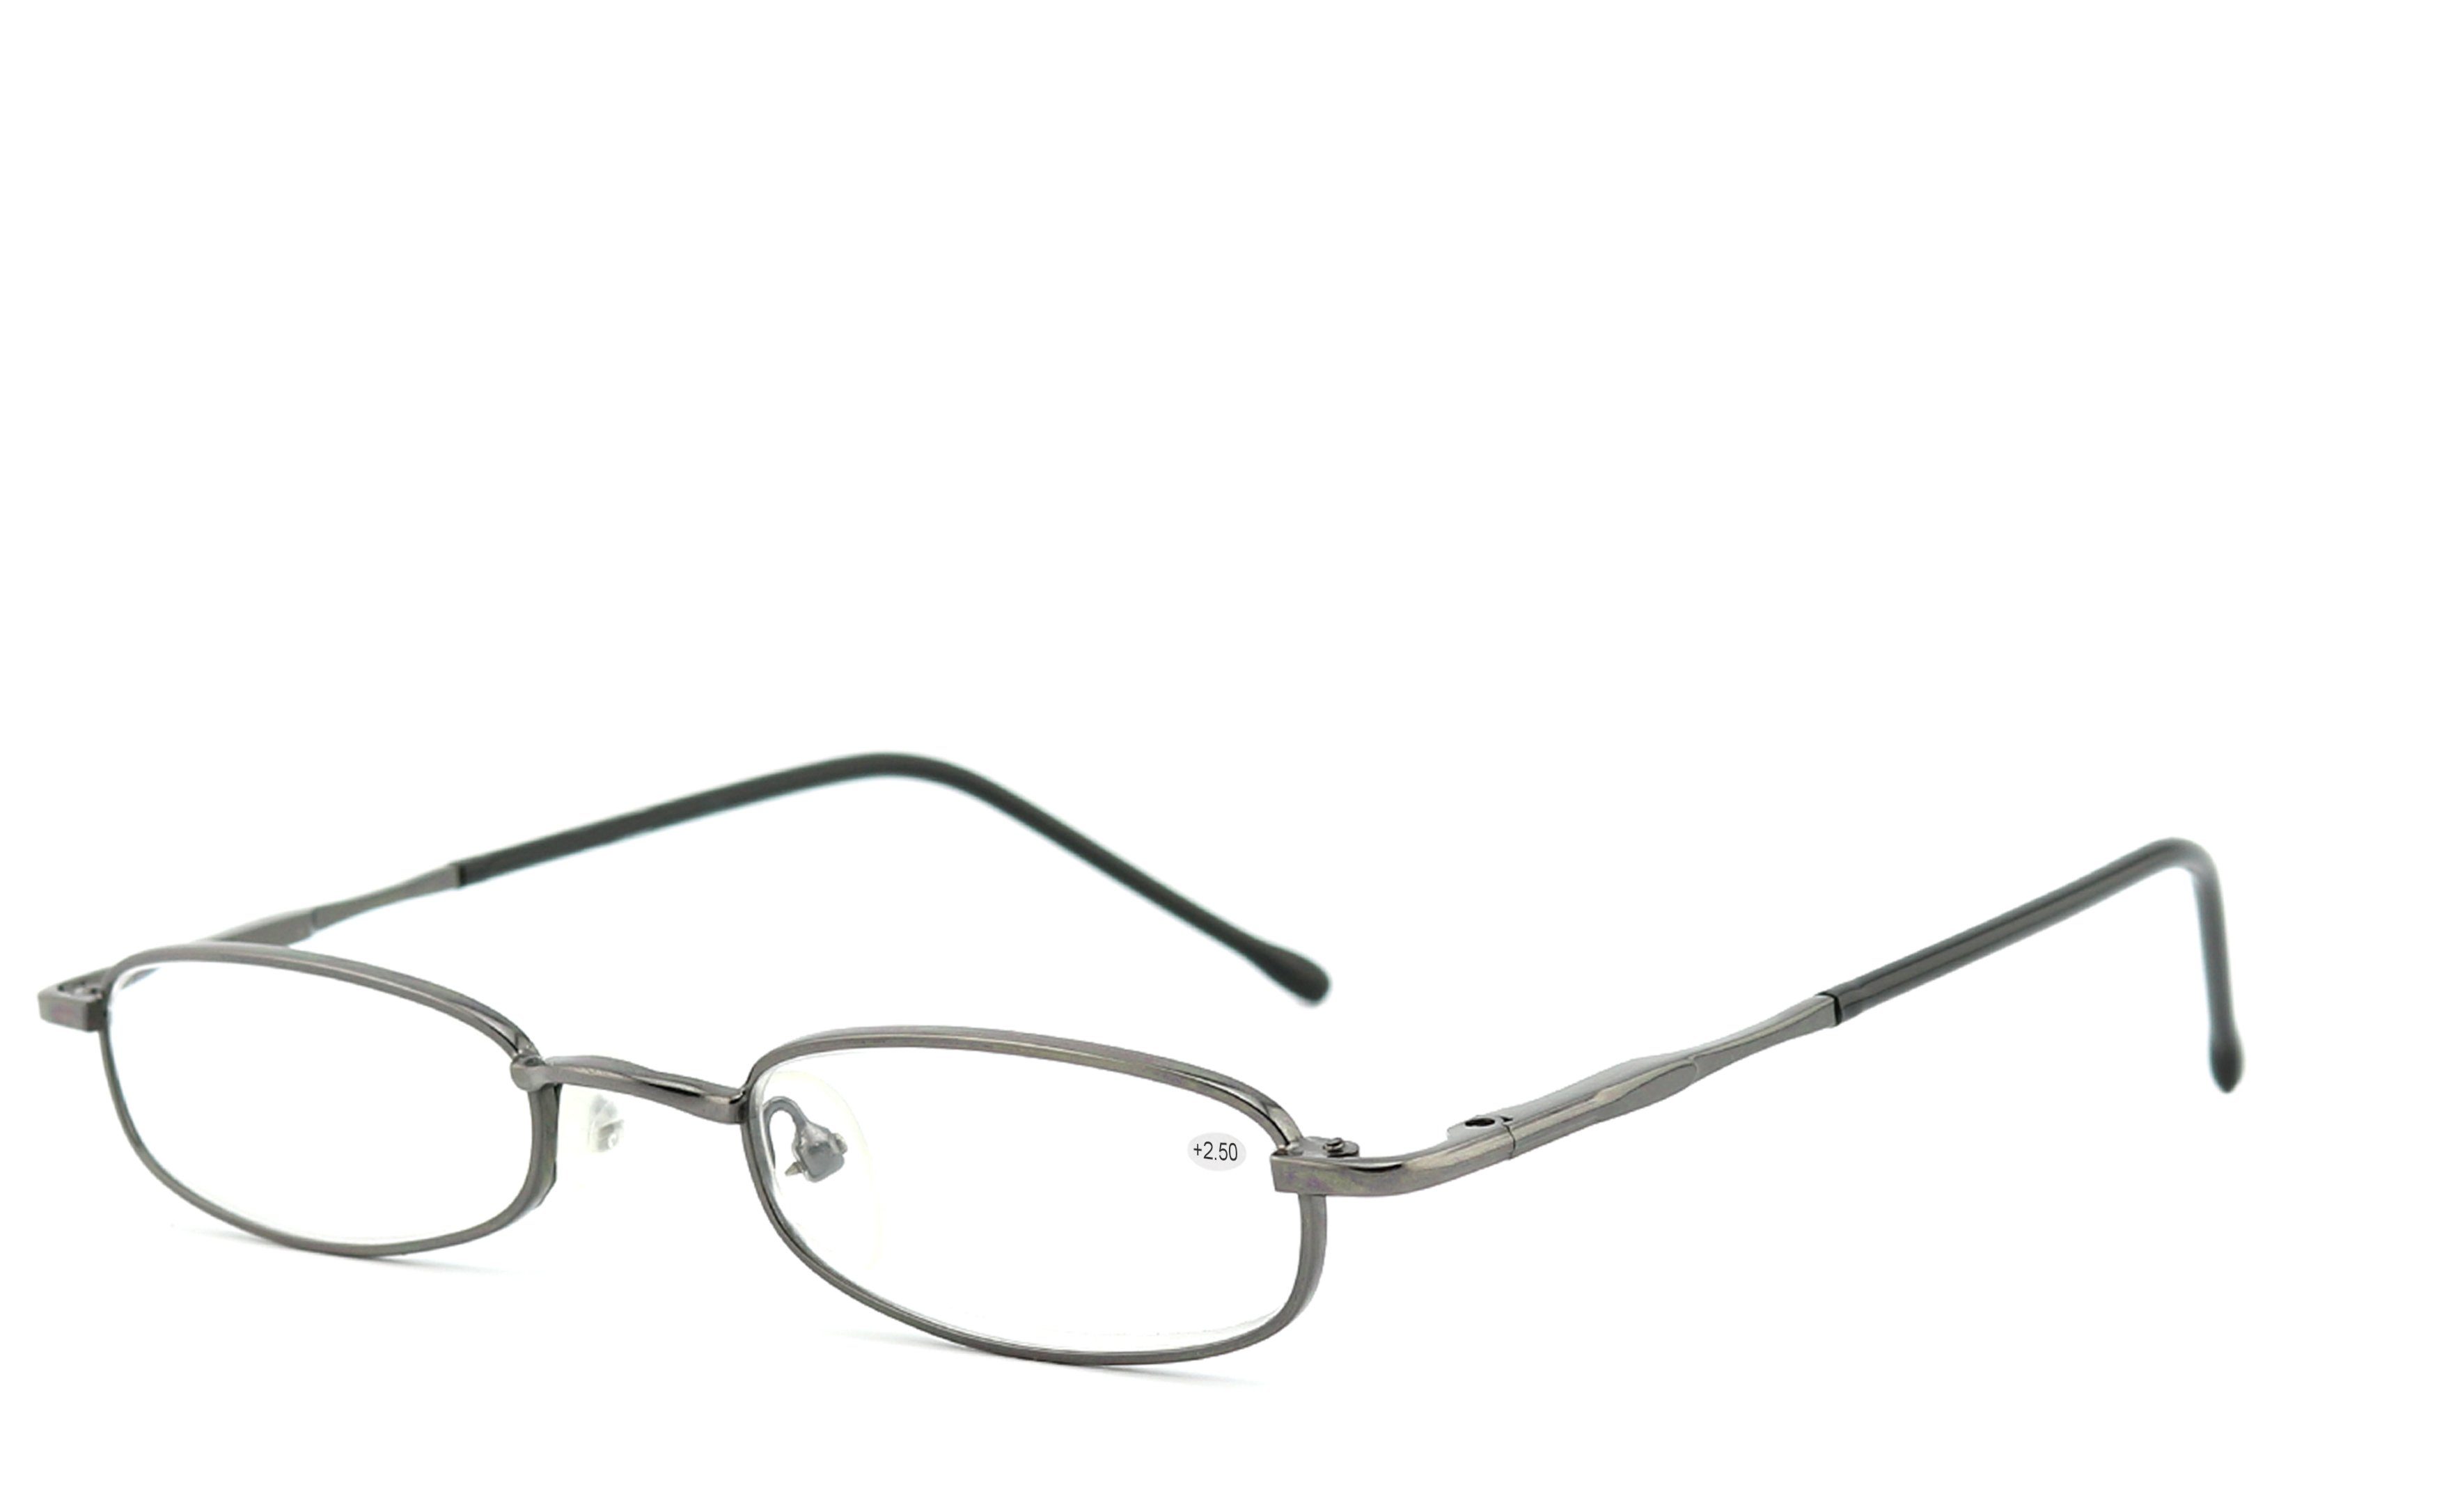 Lesebrille Flex-Scharnieren hochwertigen Brillenbügel Lesebrille schwarz-chrom, mit EYESTUFF